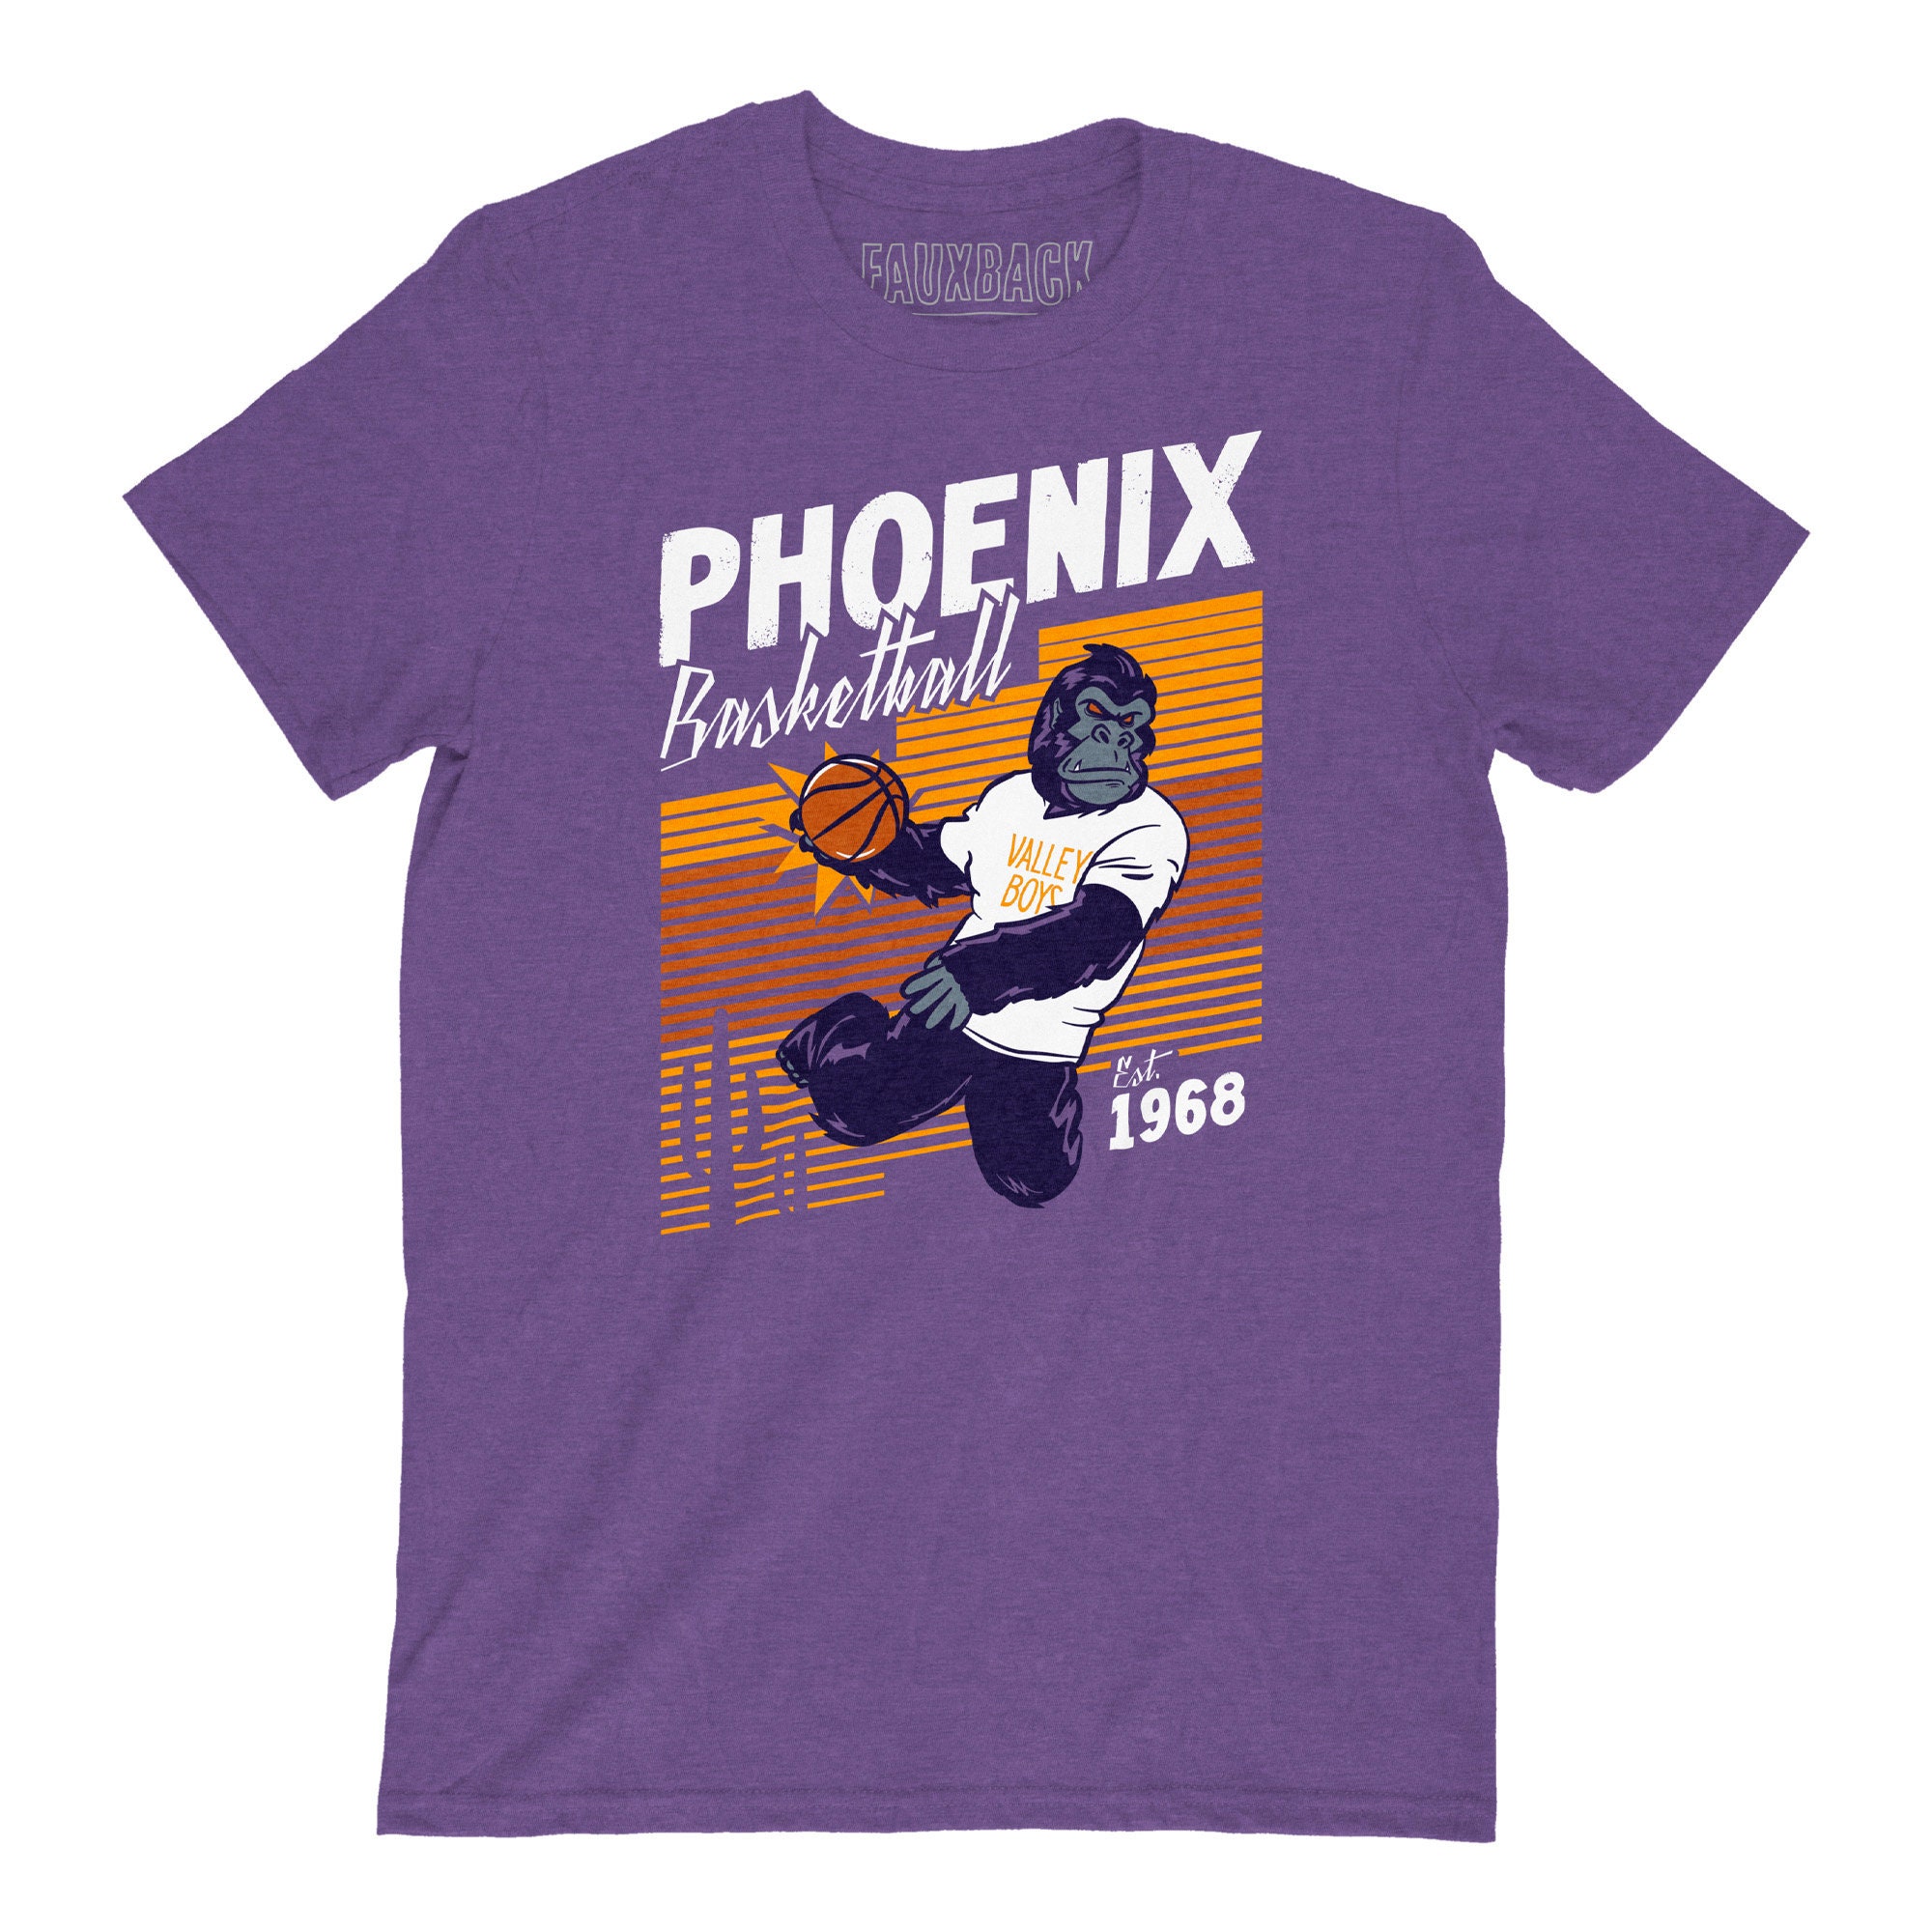 Art Drawing Devin Booker Phoenix Suns Basketball Unisex T-Shirt